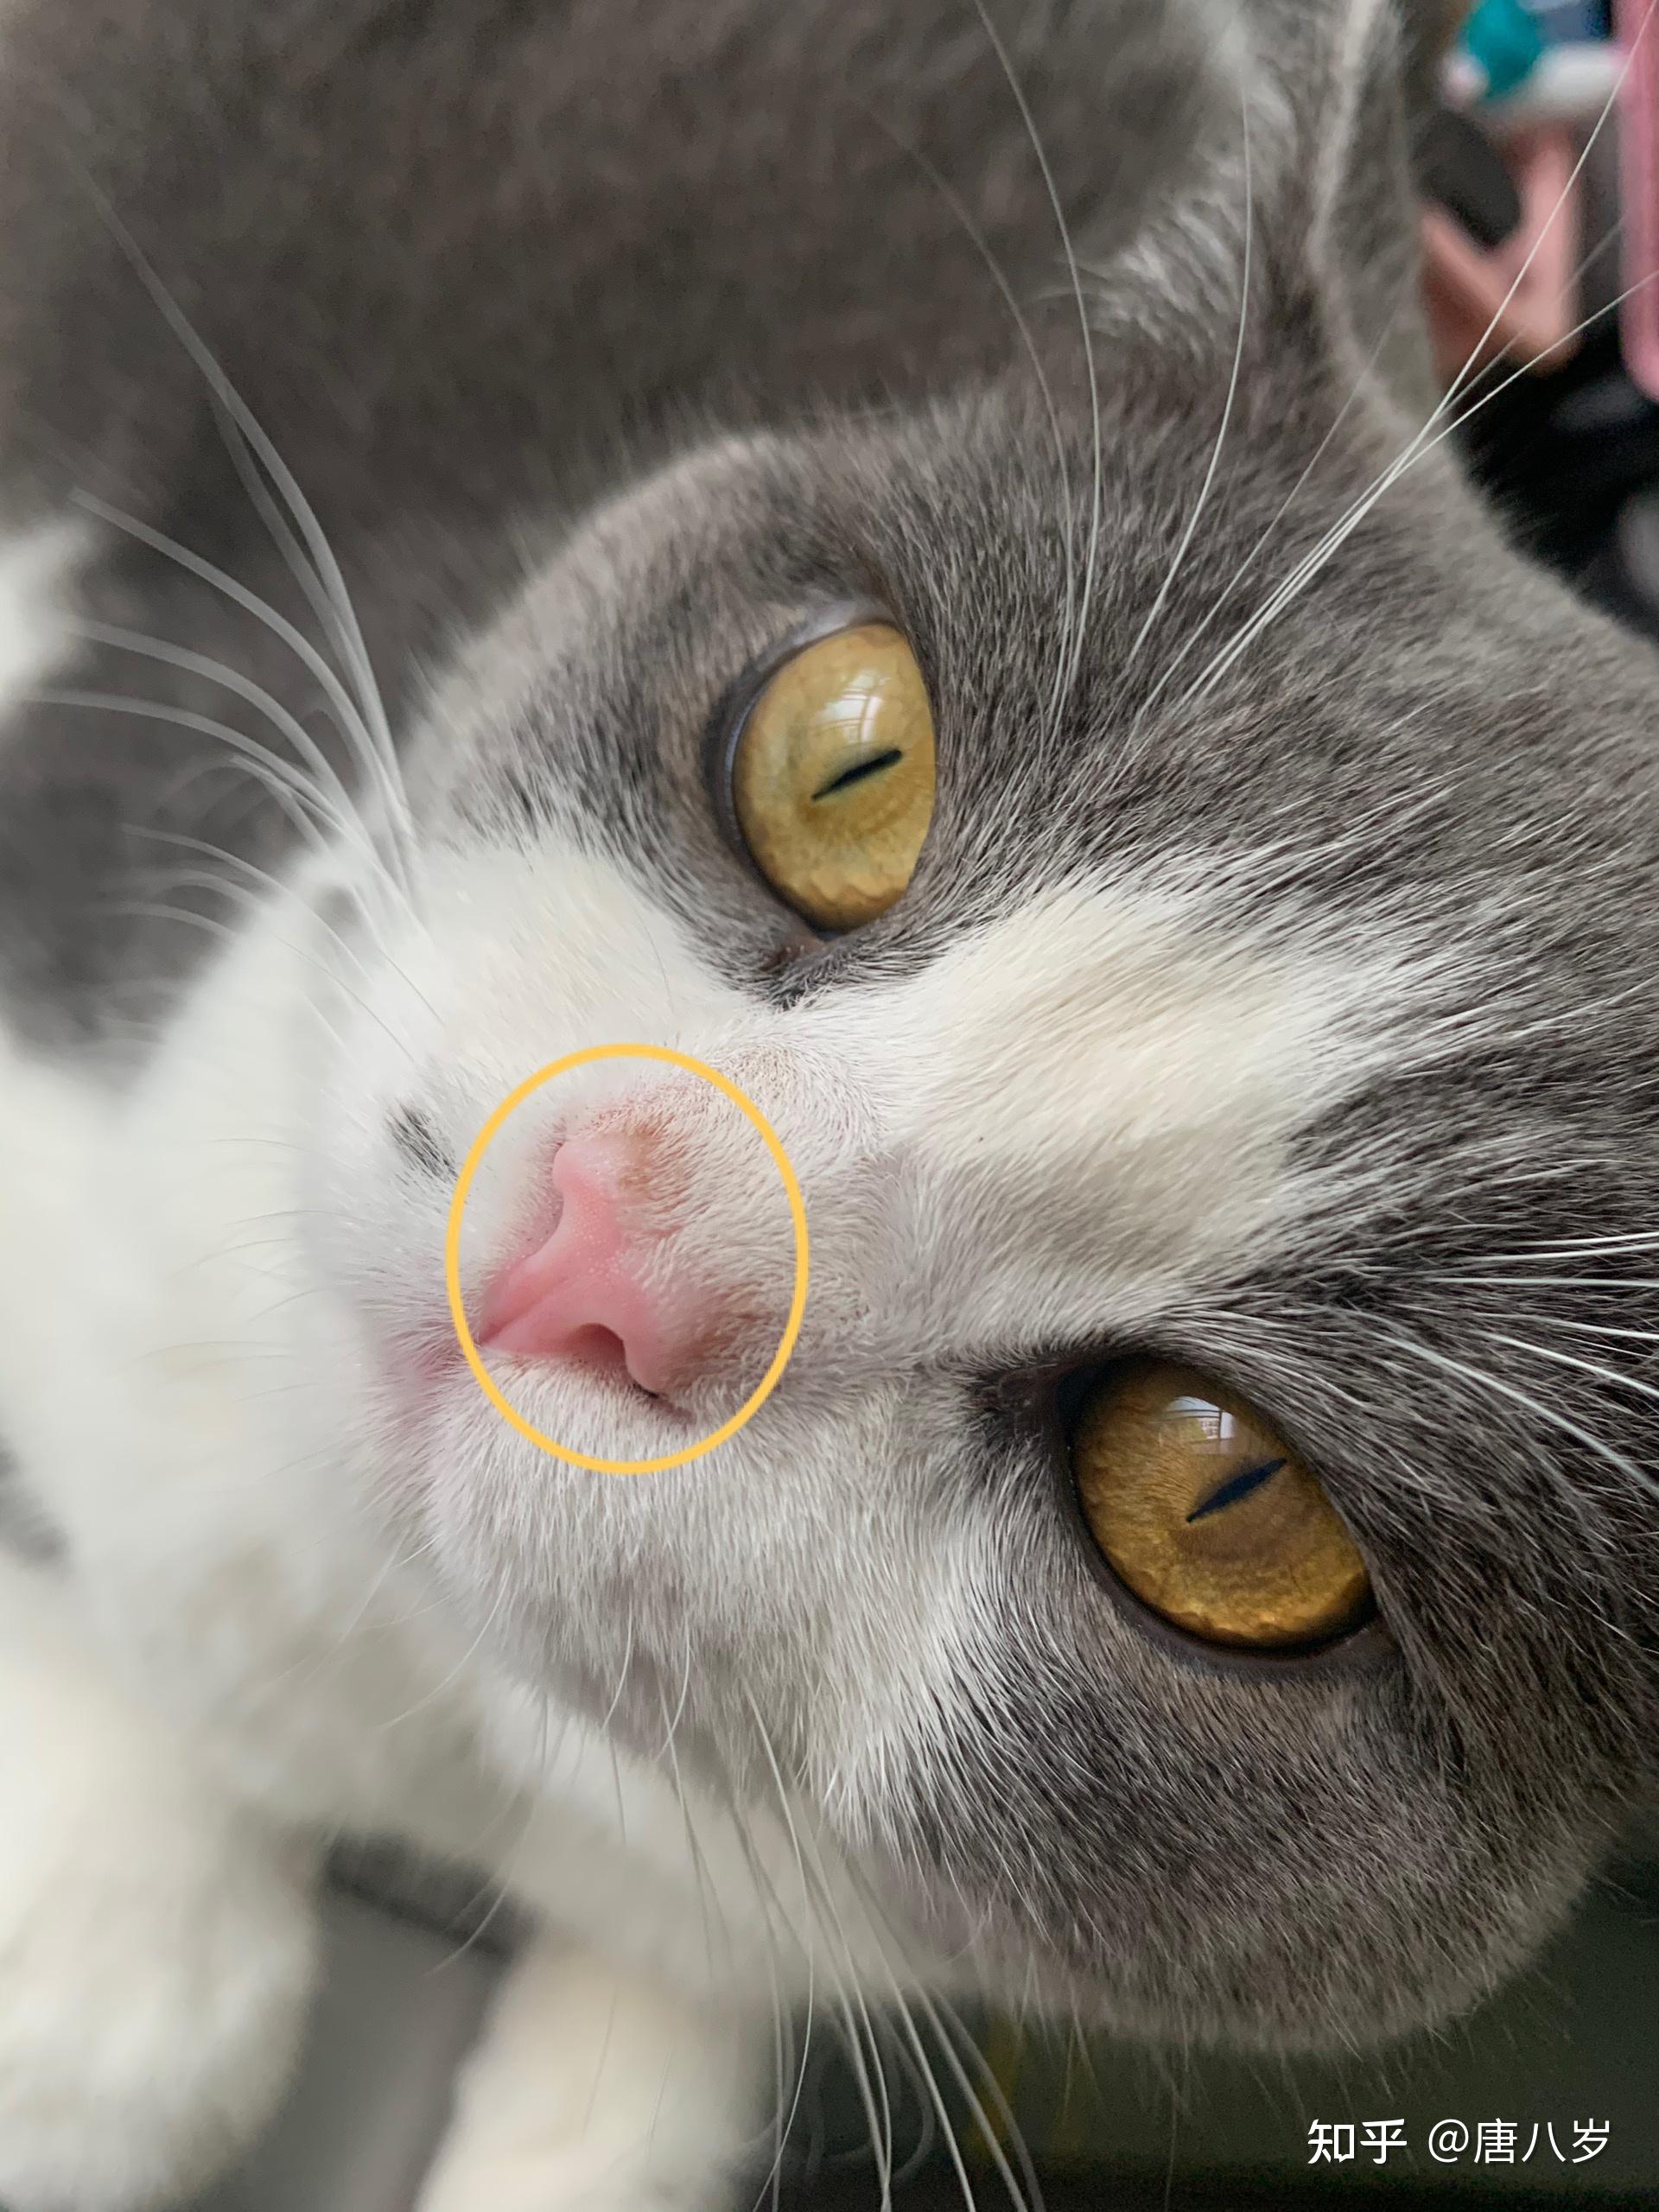 猫猫鼻子上长了脏脏的东西是什么病吗?